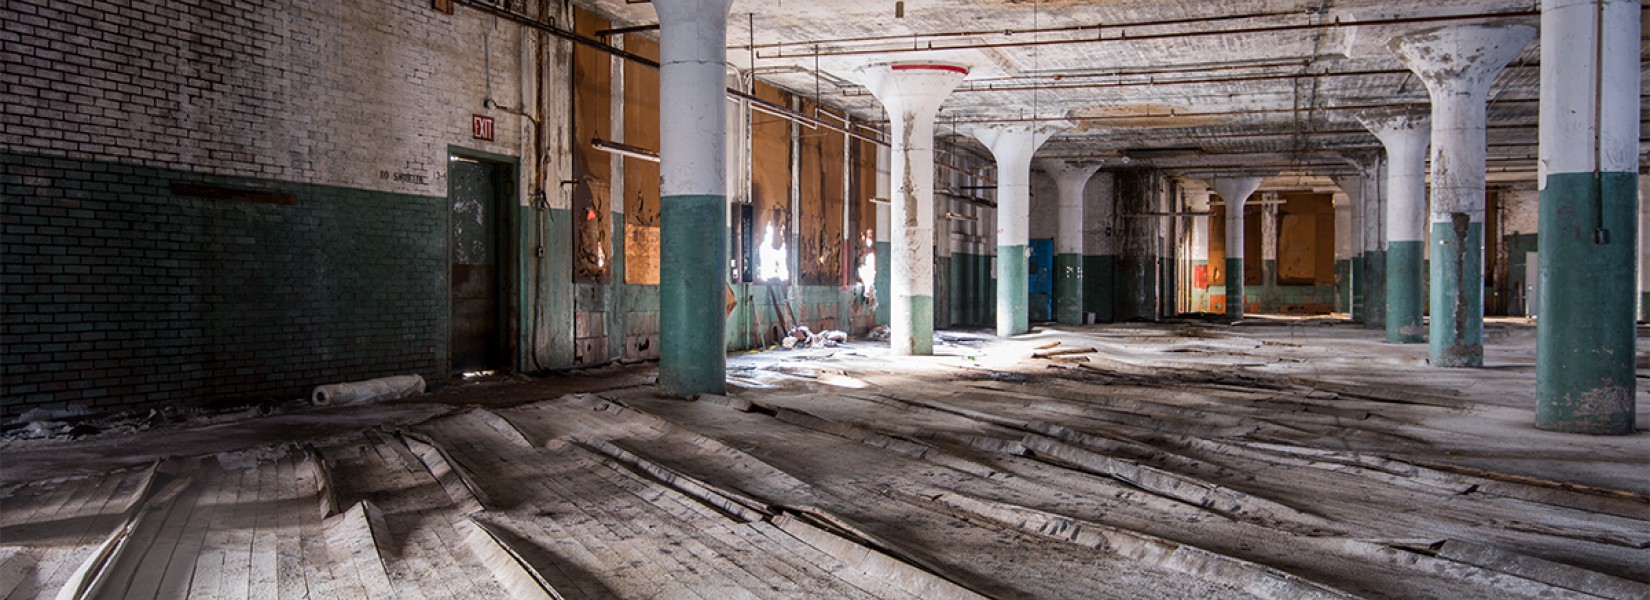 La vieille usine américaine abandonnée